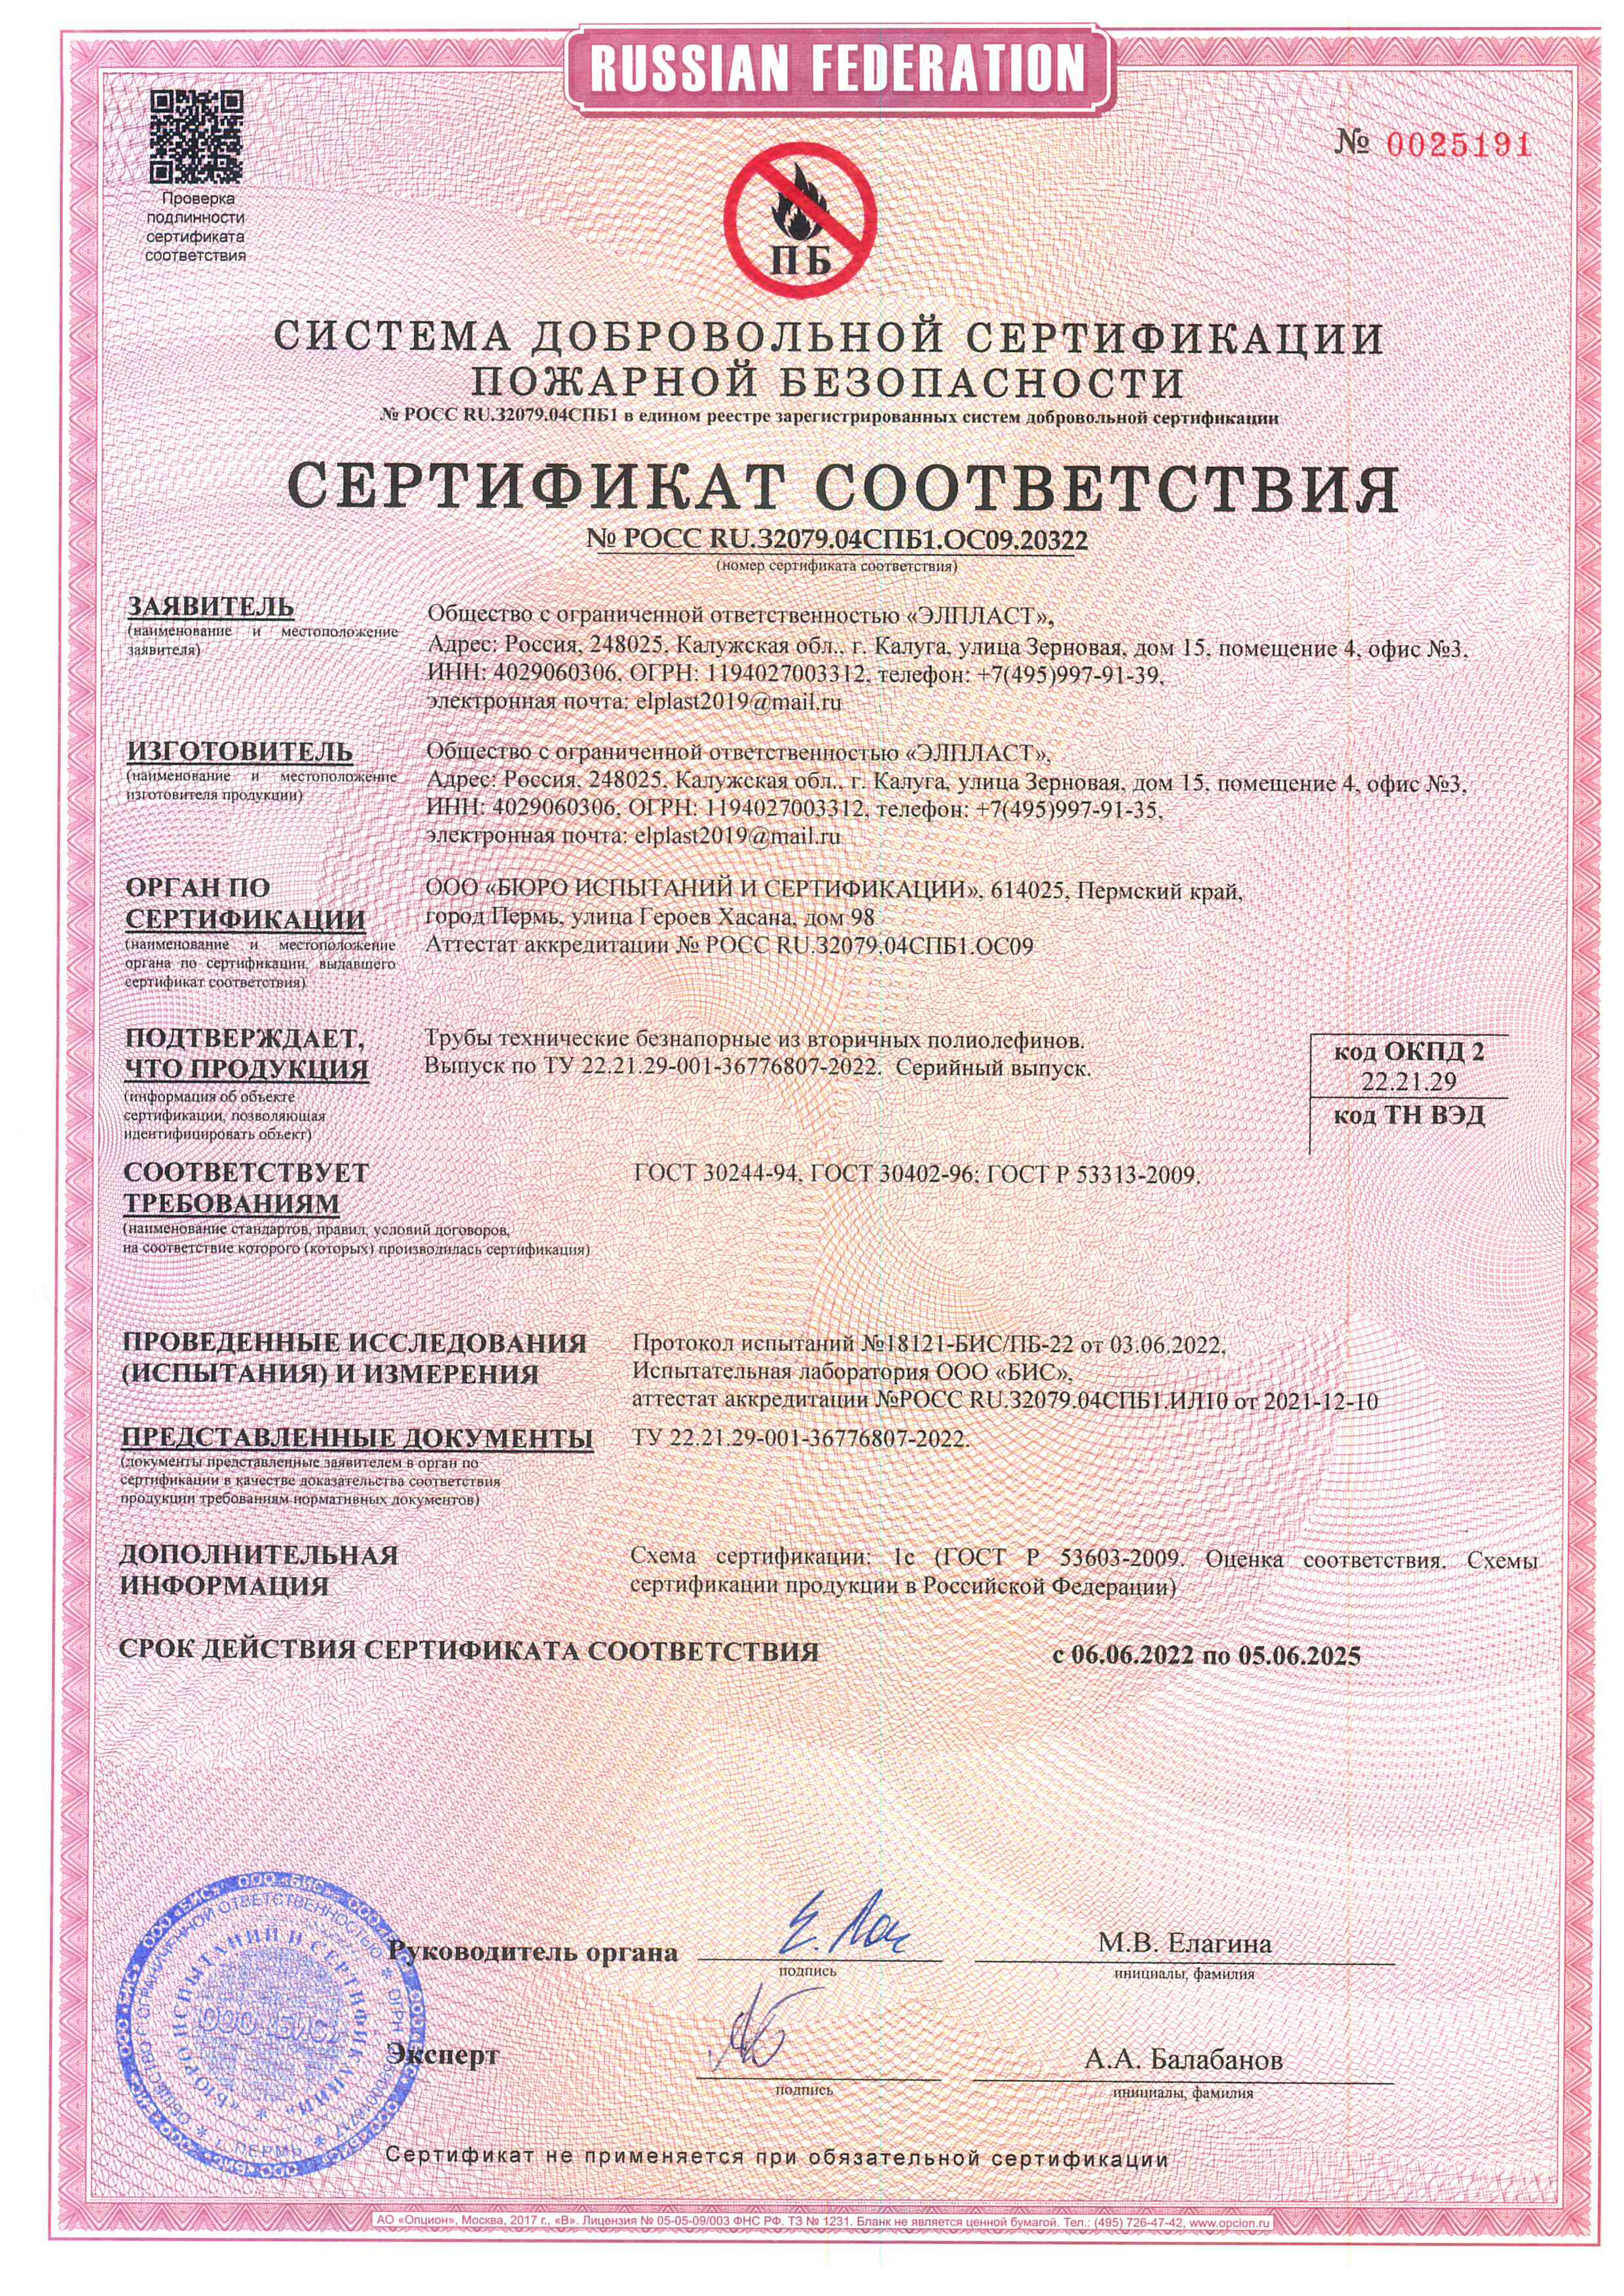 Сертификат соответствия труб технических безнапорных выдан ООО Элпласт